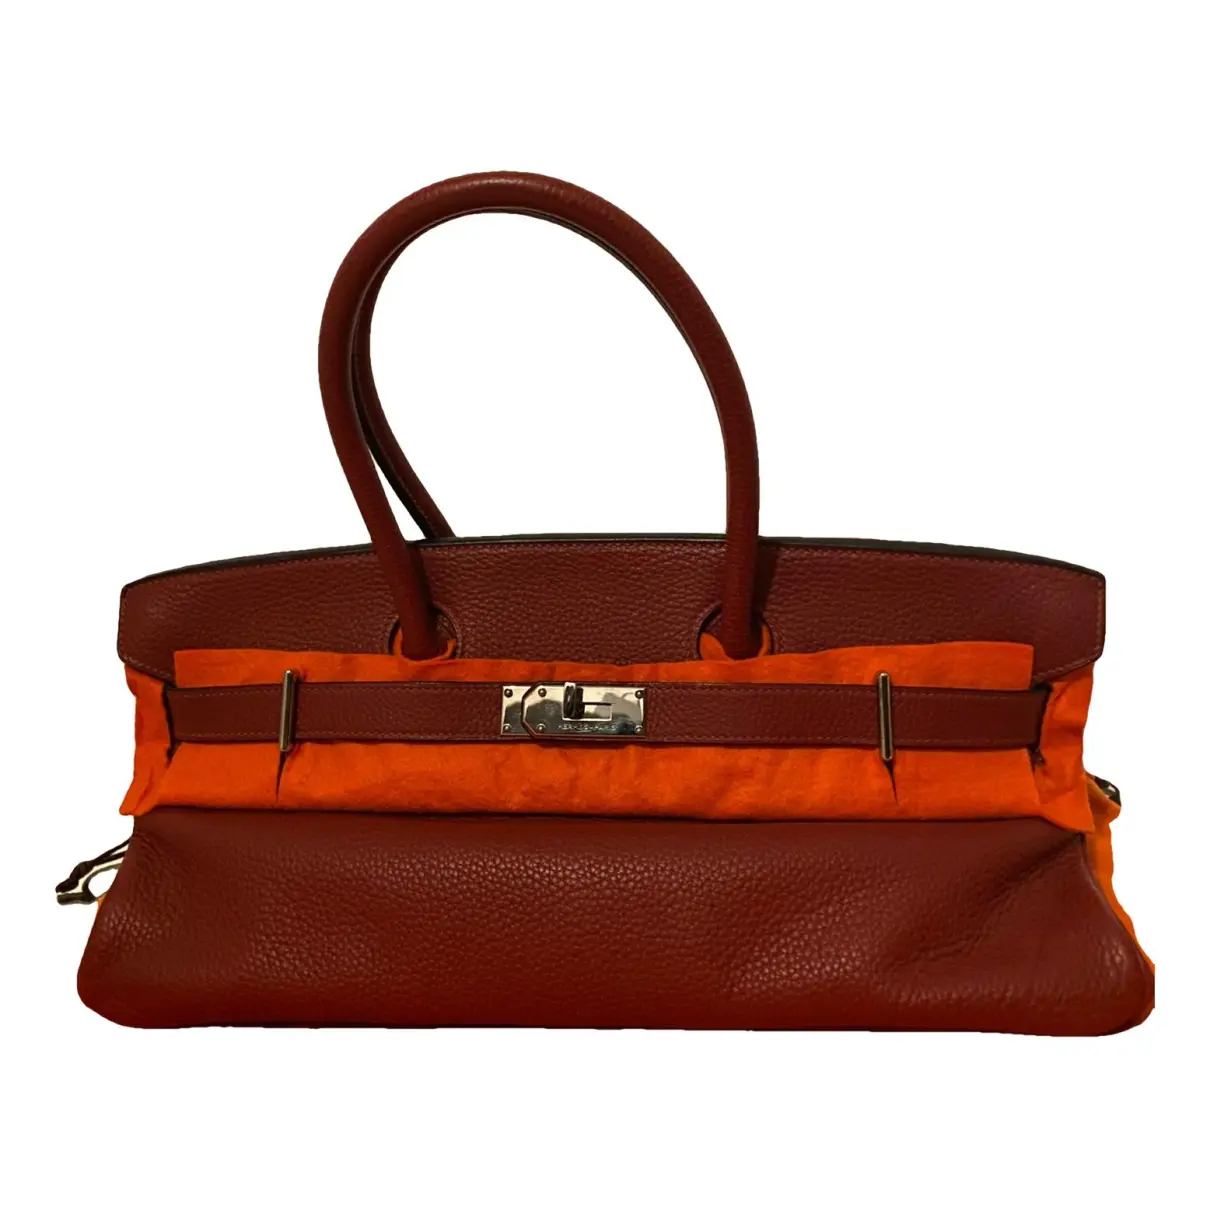 Birkin Shoulder Leather Handbag